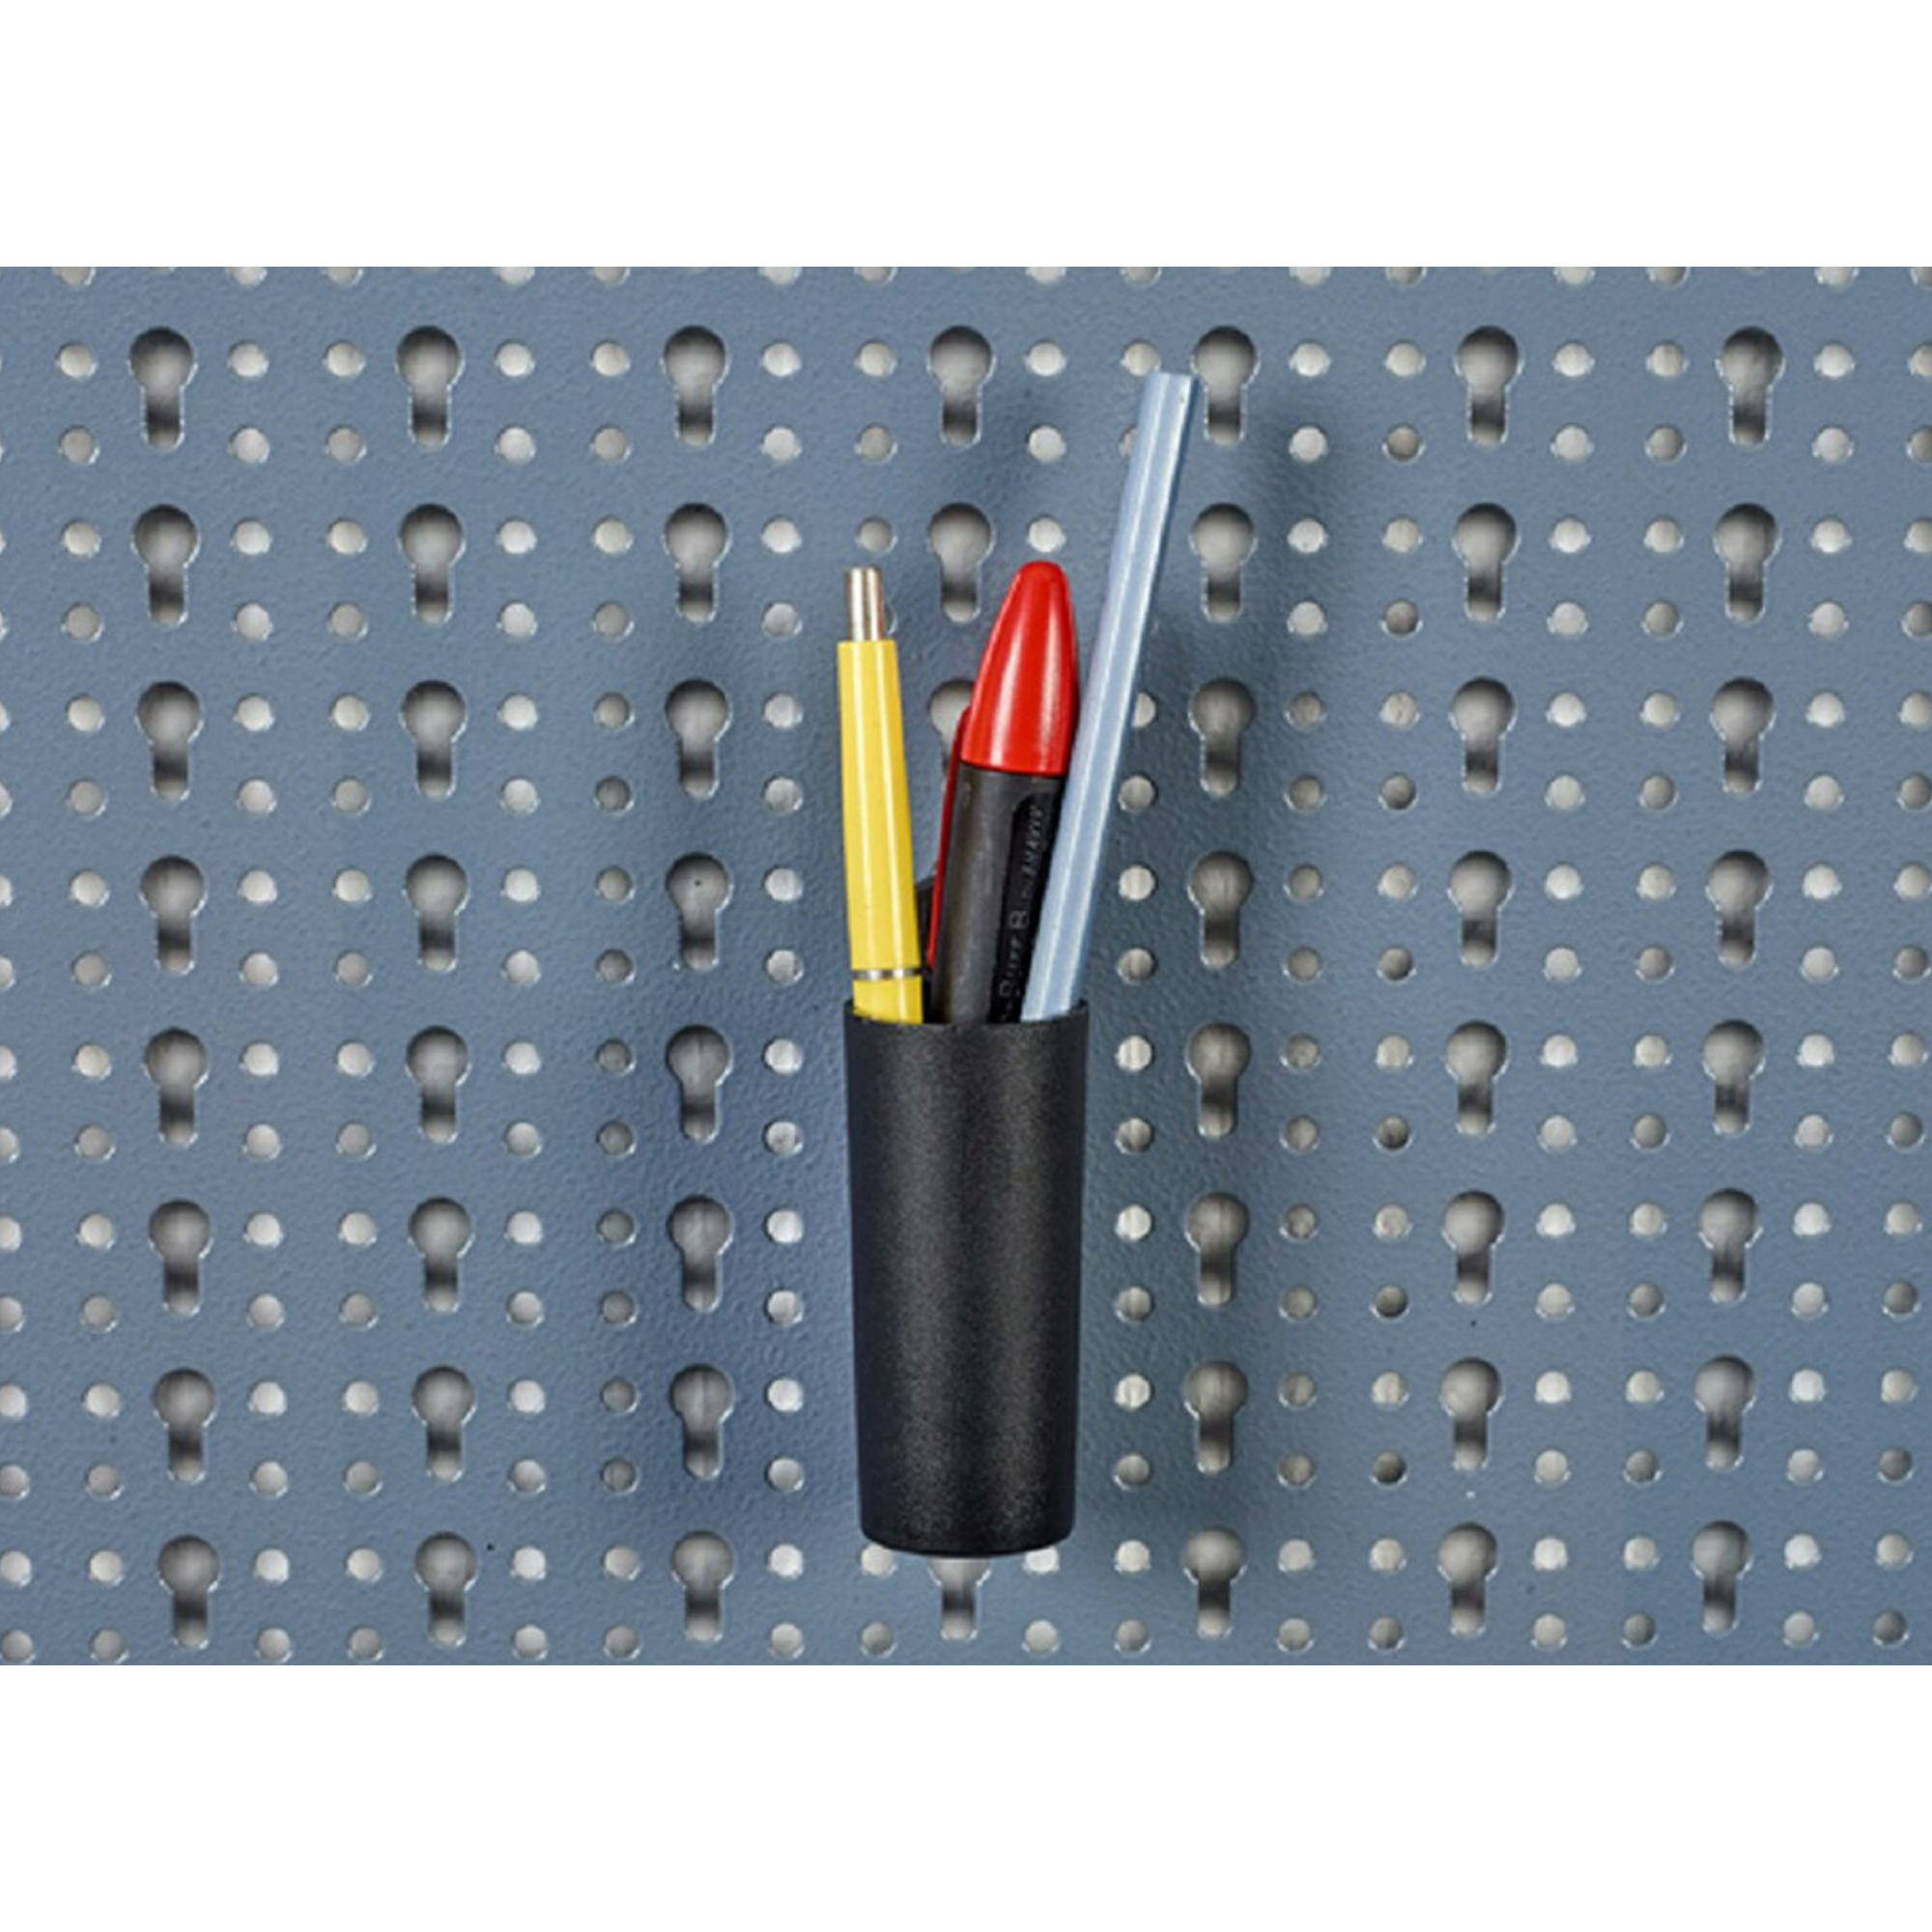 Systemhalter für Bleistifte Ø 3 cm, 2 Stück + product picture